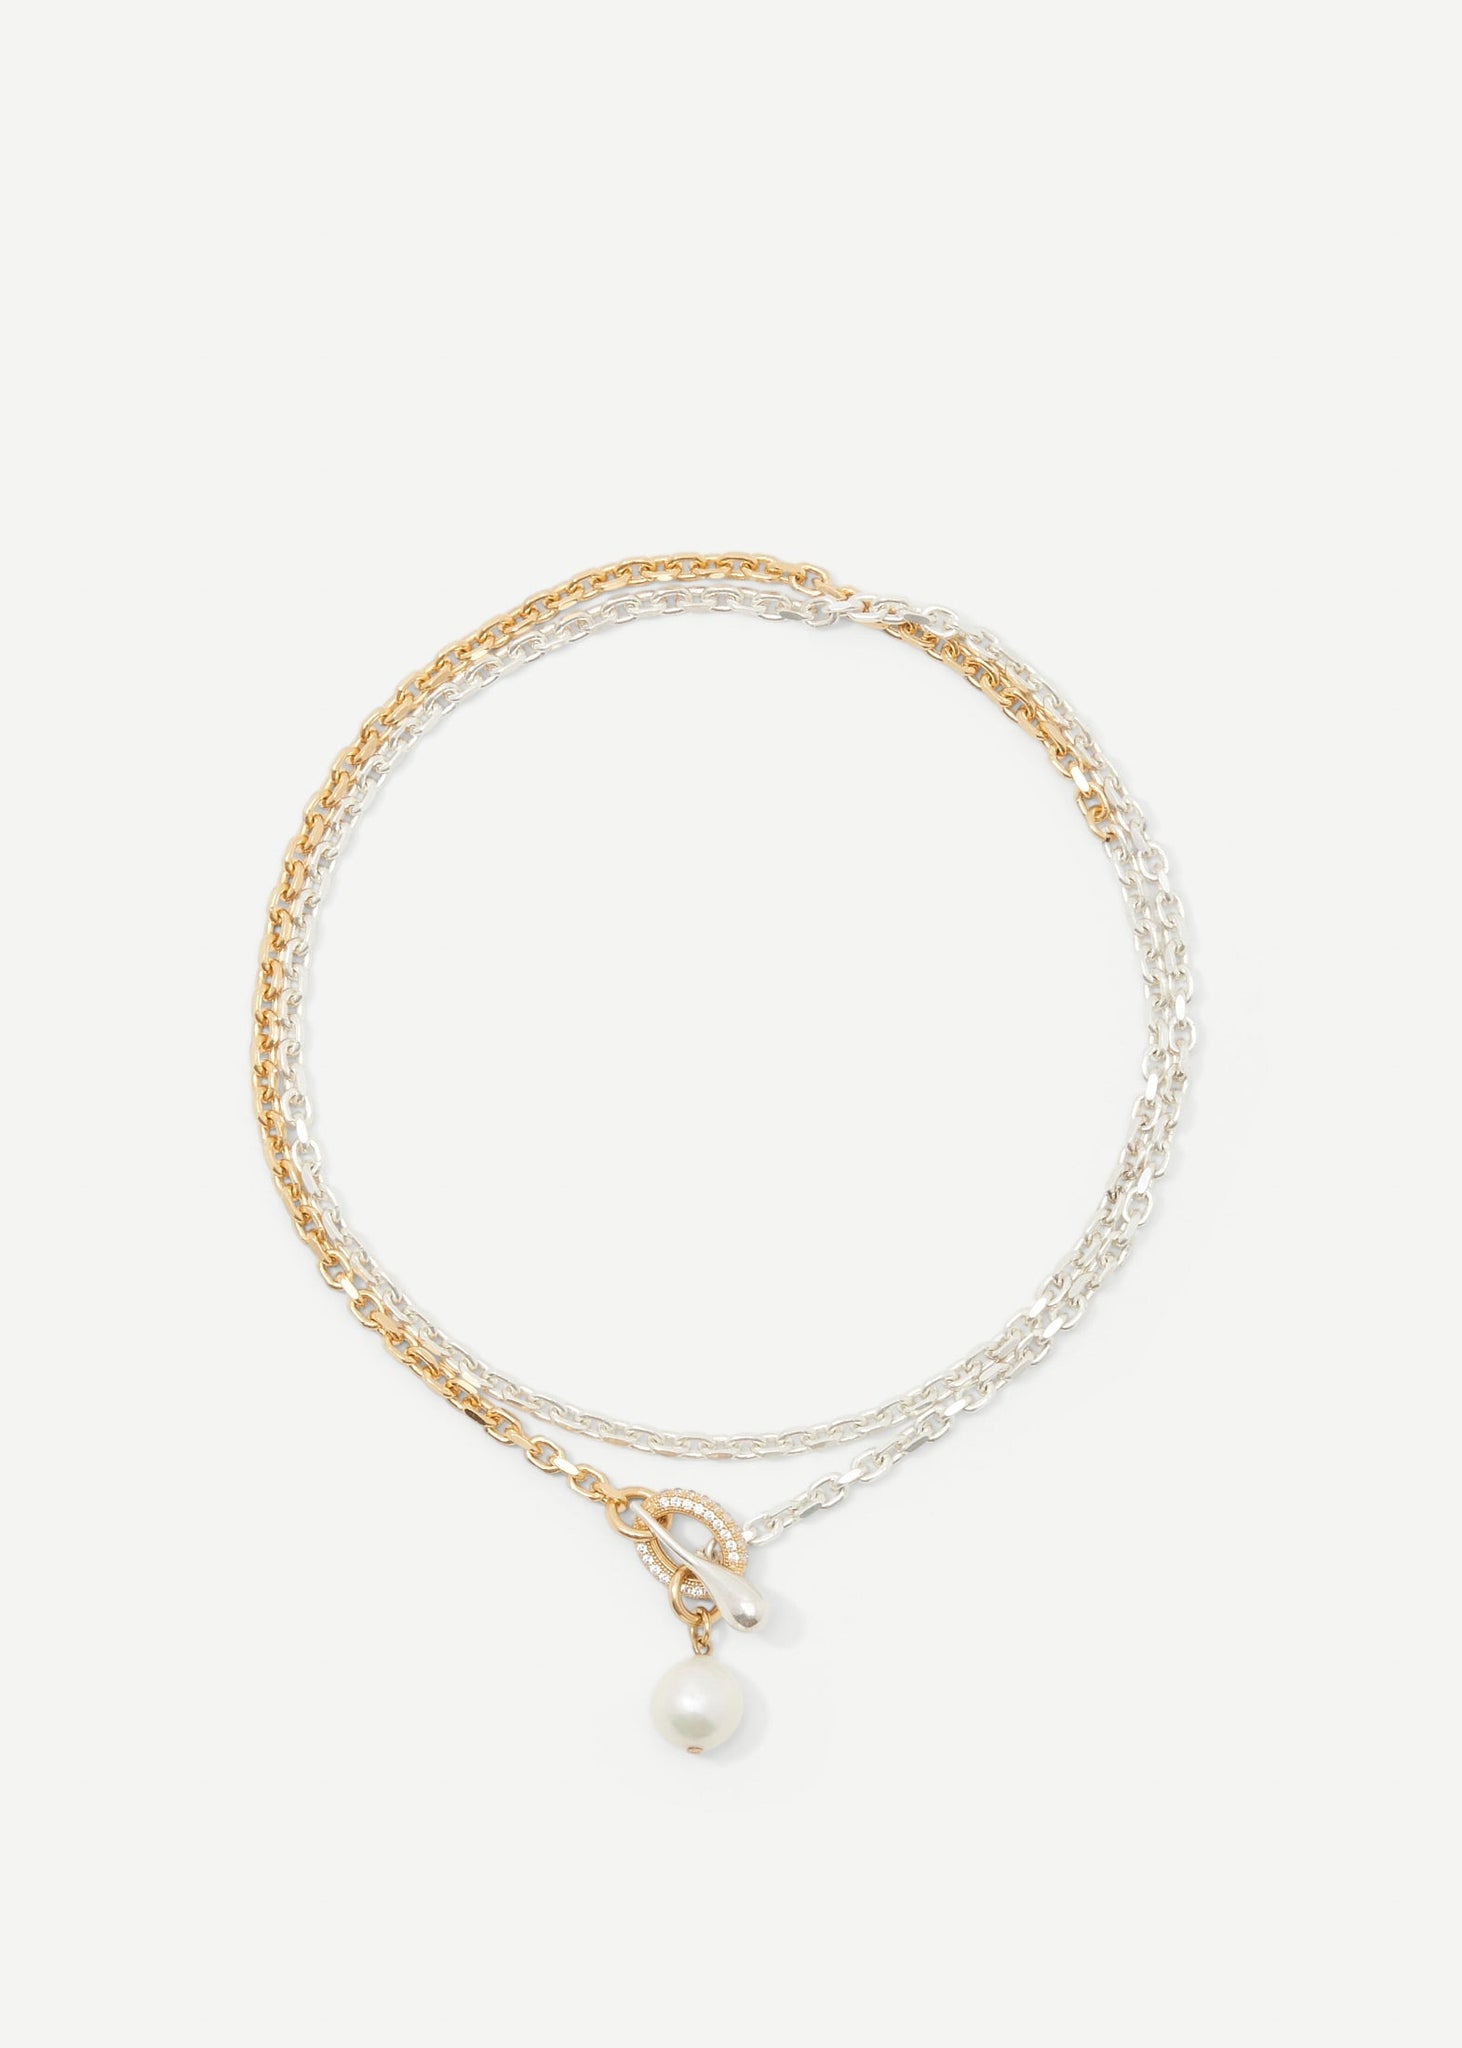 Stoned Lariat Necklace - Necklaces - Cornelia Webb - 3